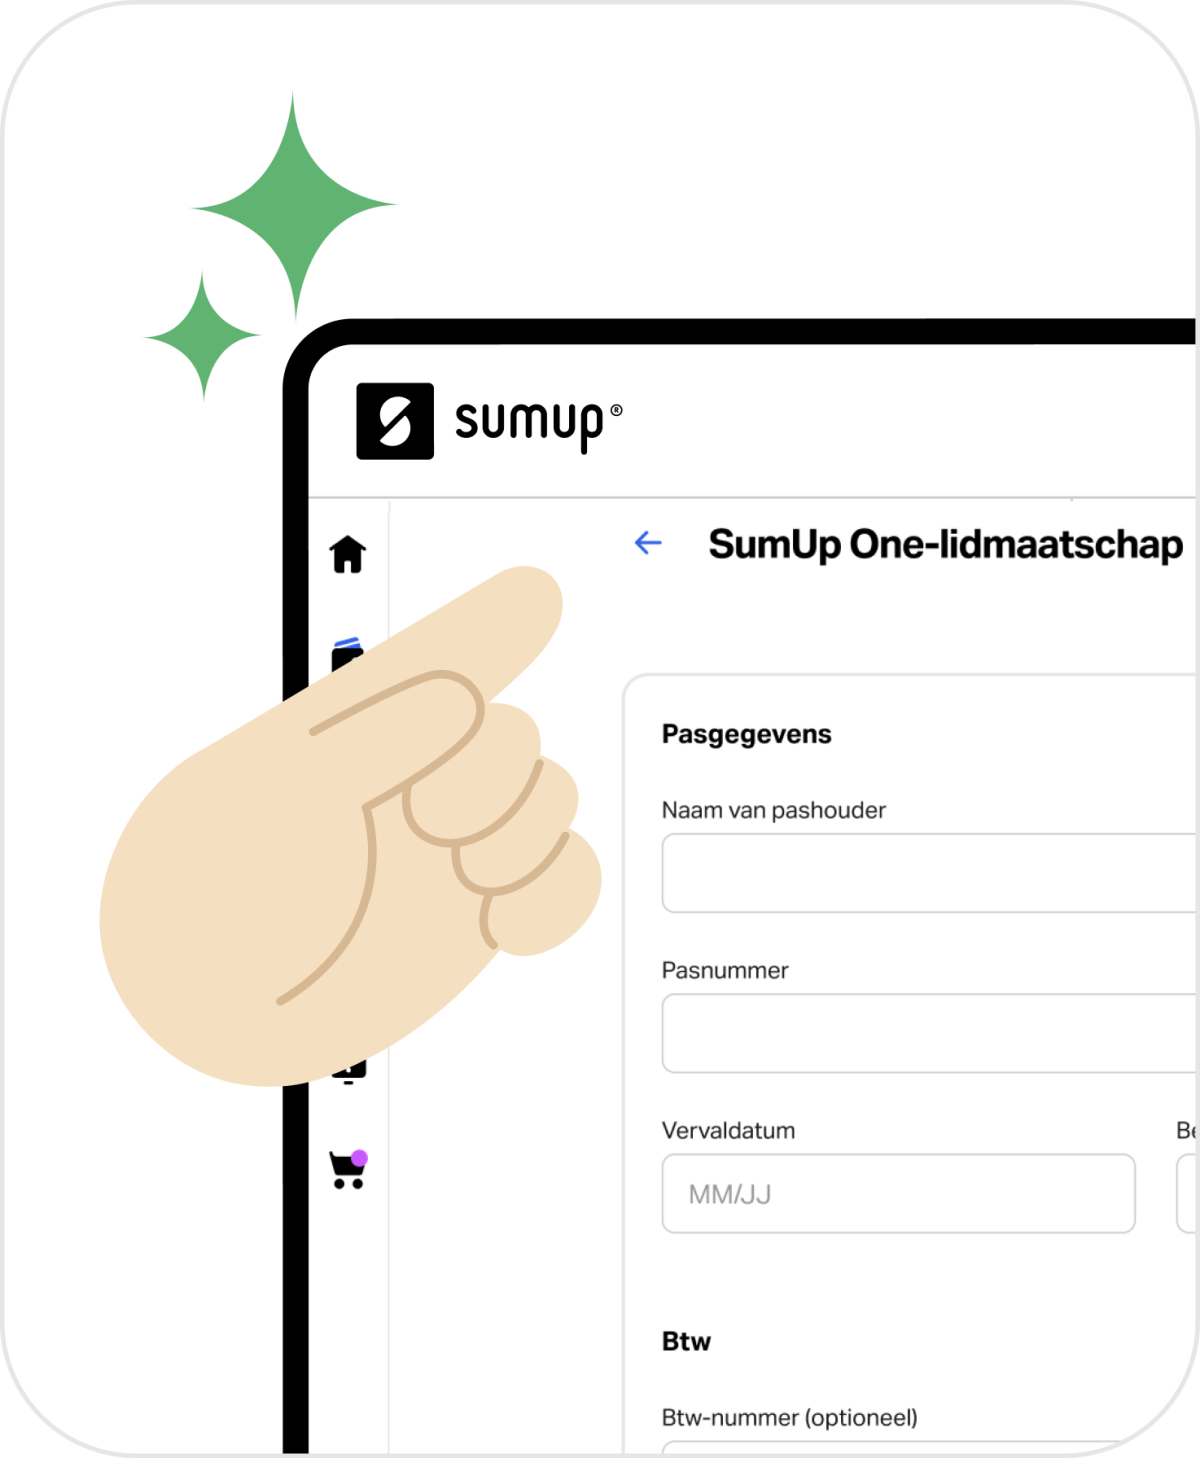 Afbeelding die laat zien waar mensen zich kunnen aanmelden voor SumUp One